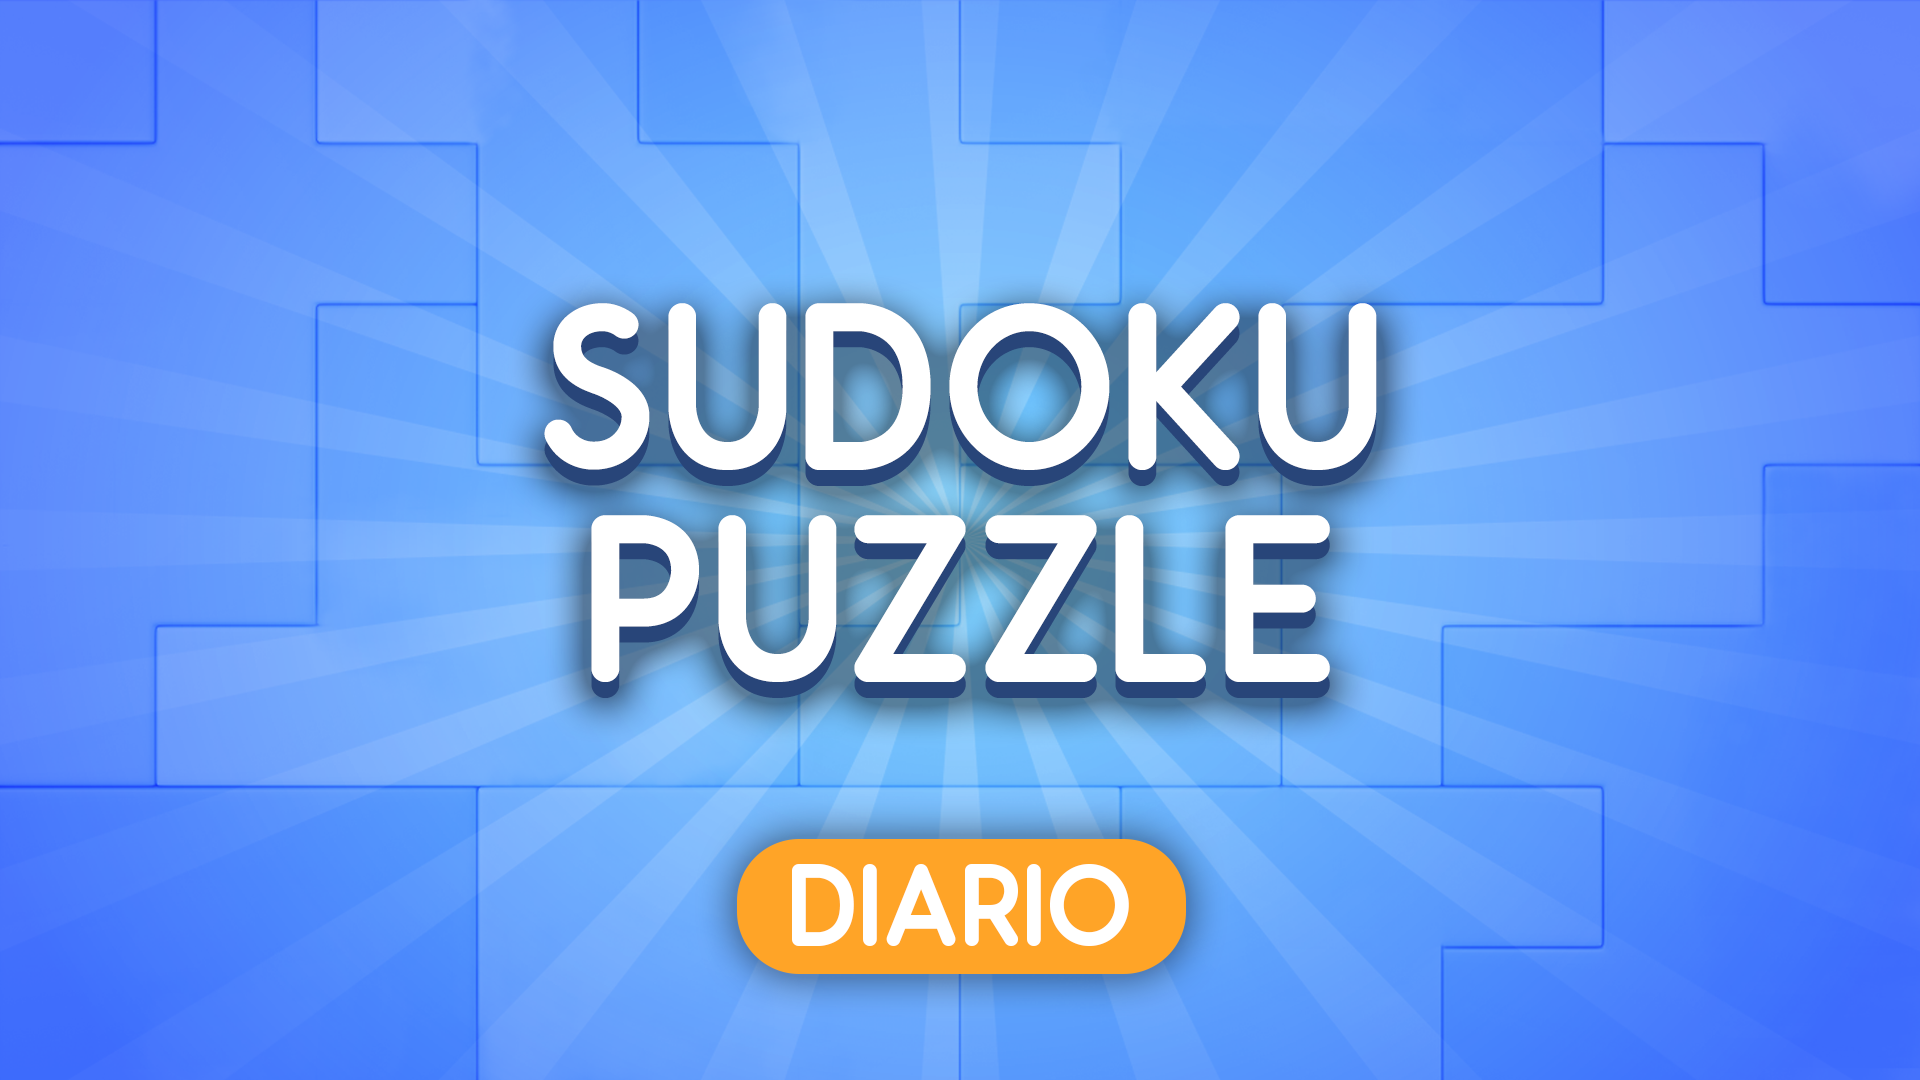 _Pasatiempos_ on X: Sudoku para imprimir nº 36